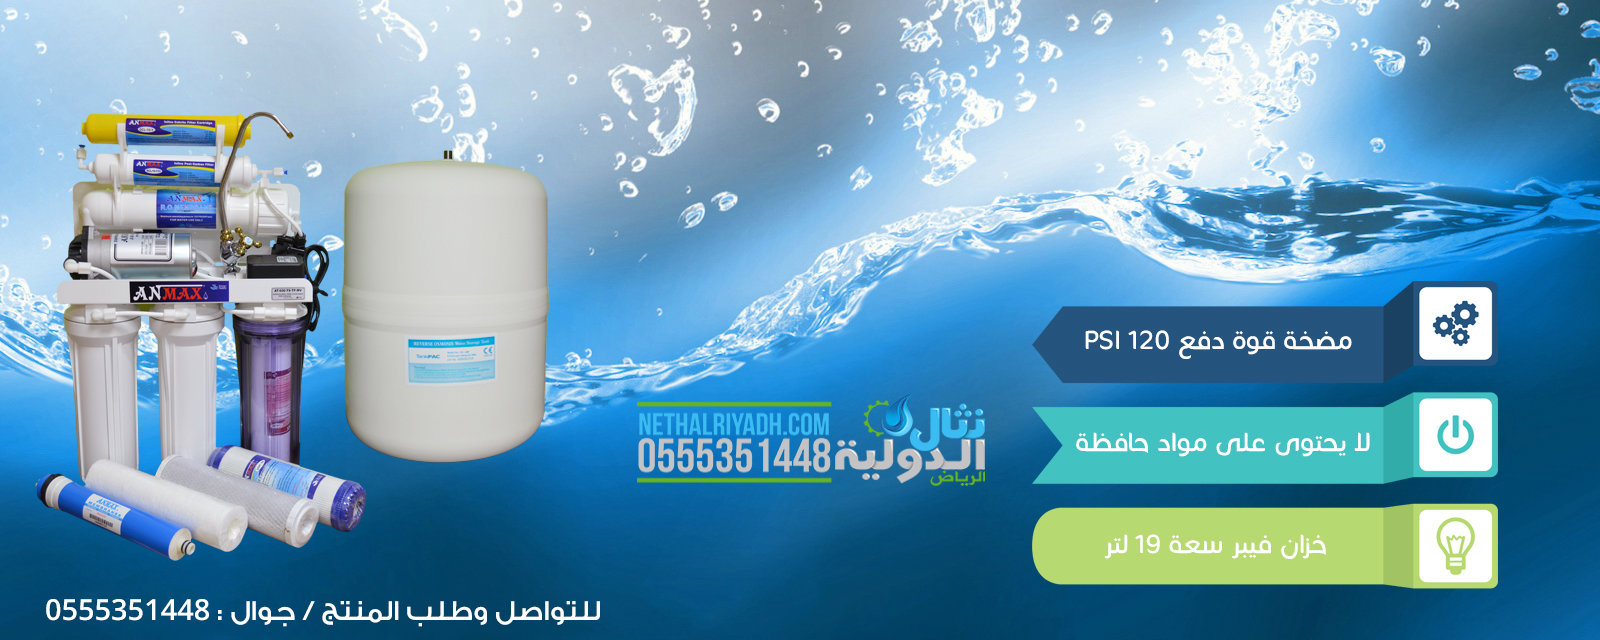 اسعار فلاتر المياه المنزلية في السعودية